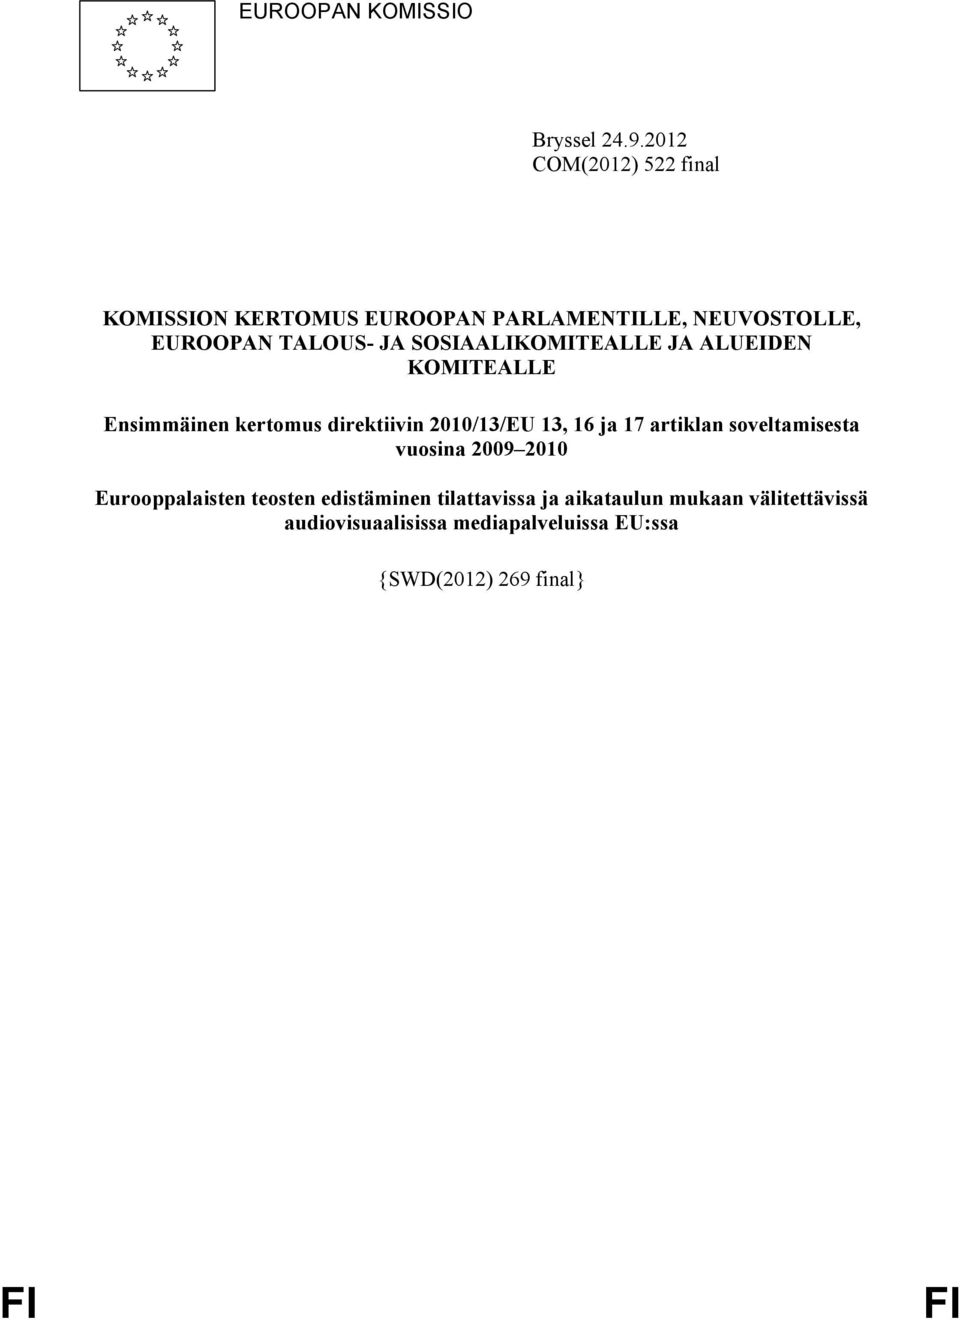 SOSIAALIKOMITEALLE JA ALUEIDEN KOMITEALLE Ensimmäinen kertomus direktiivin 2010/13/EU 13, 16 ja 17